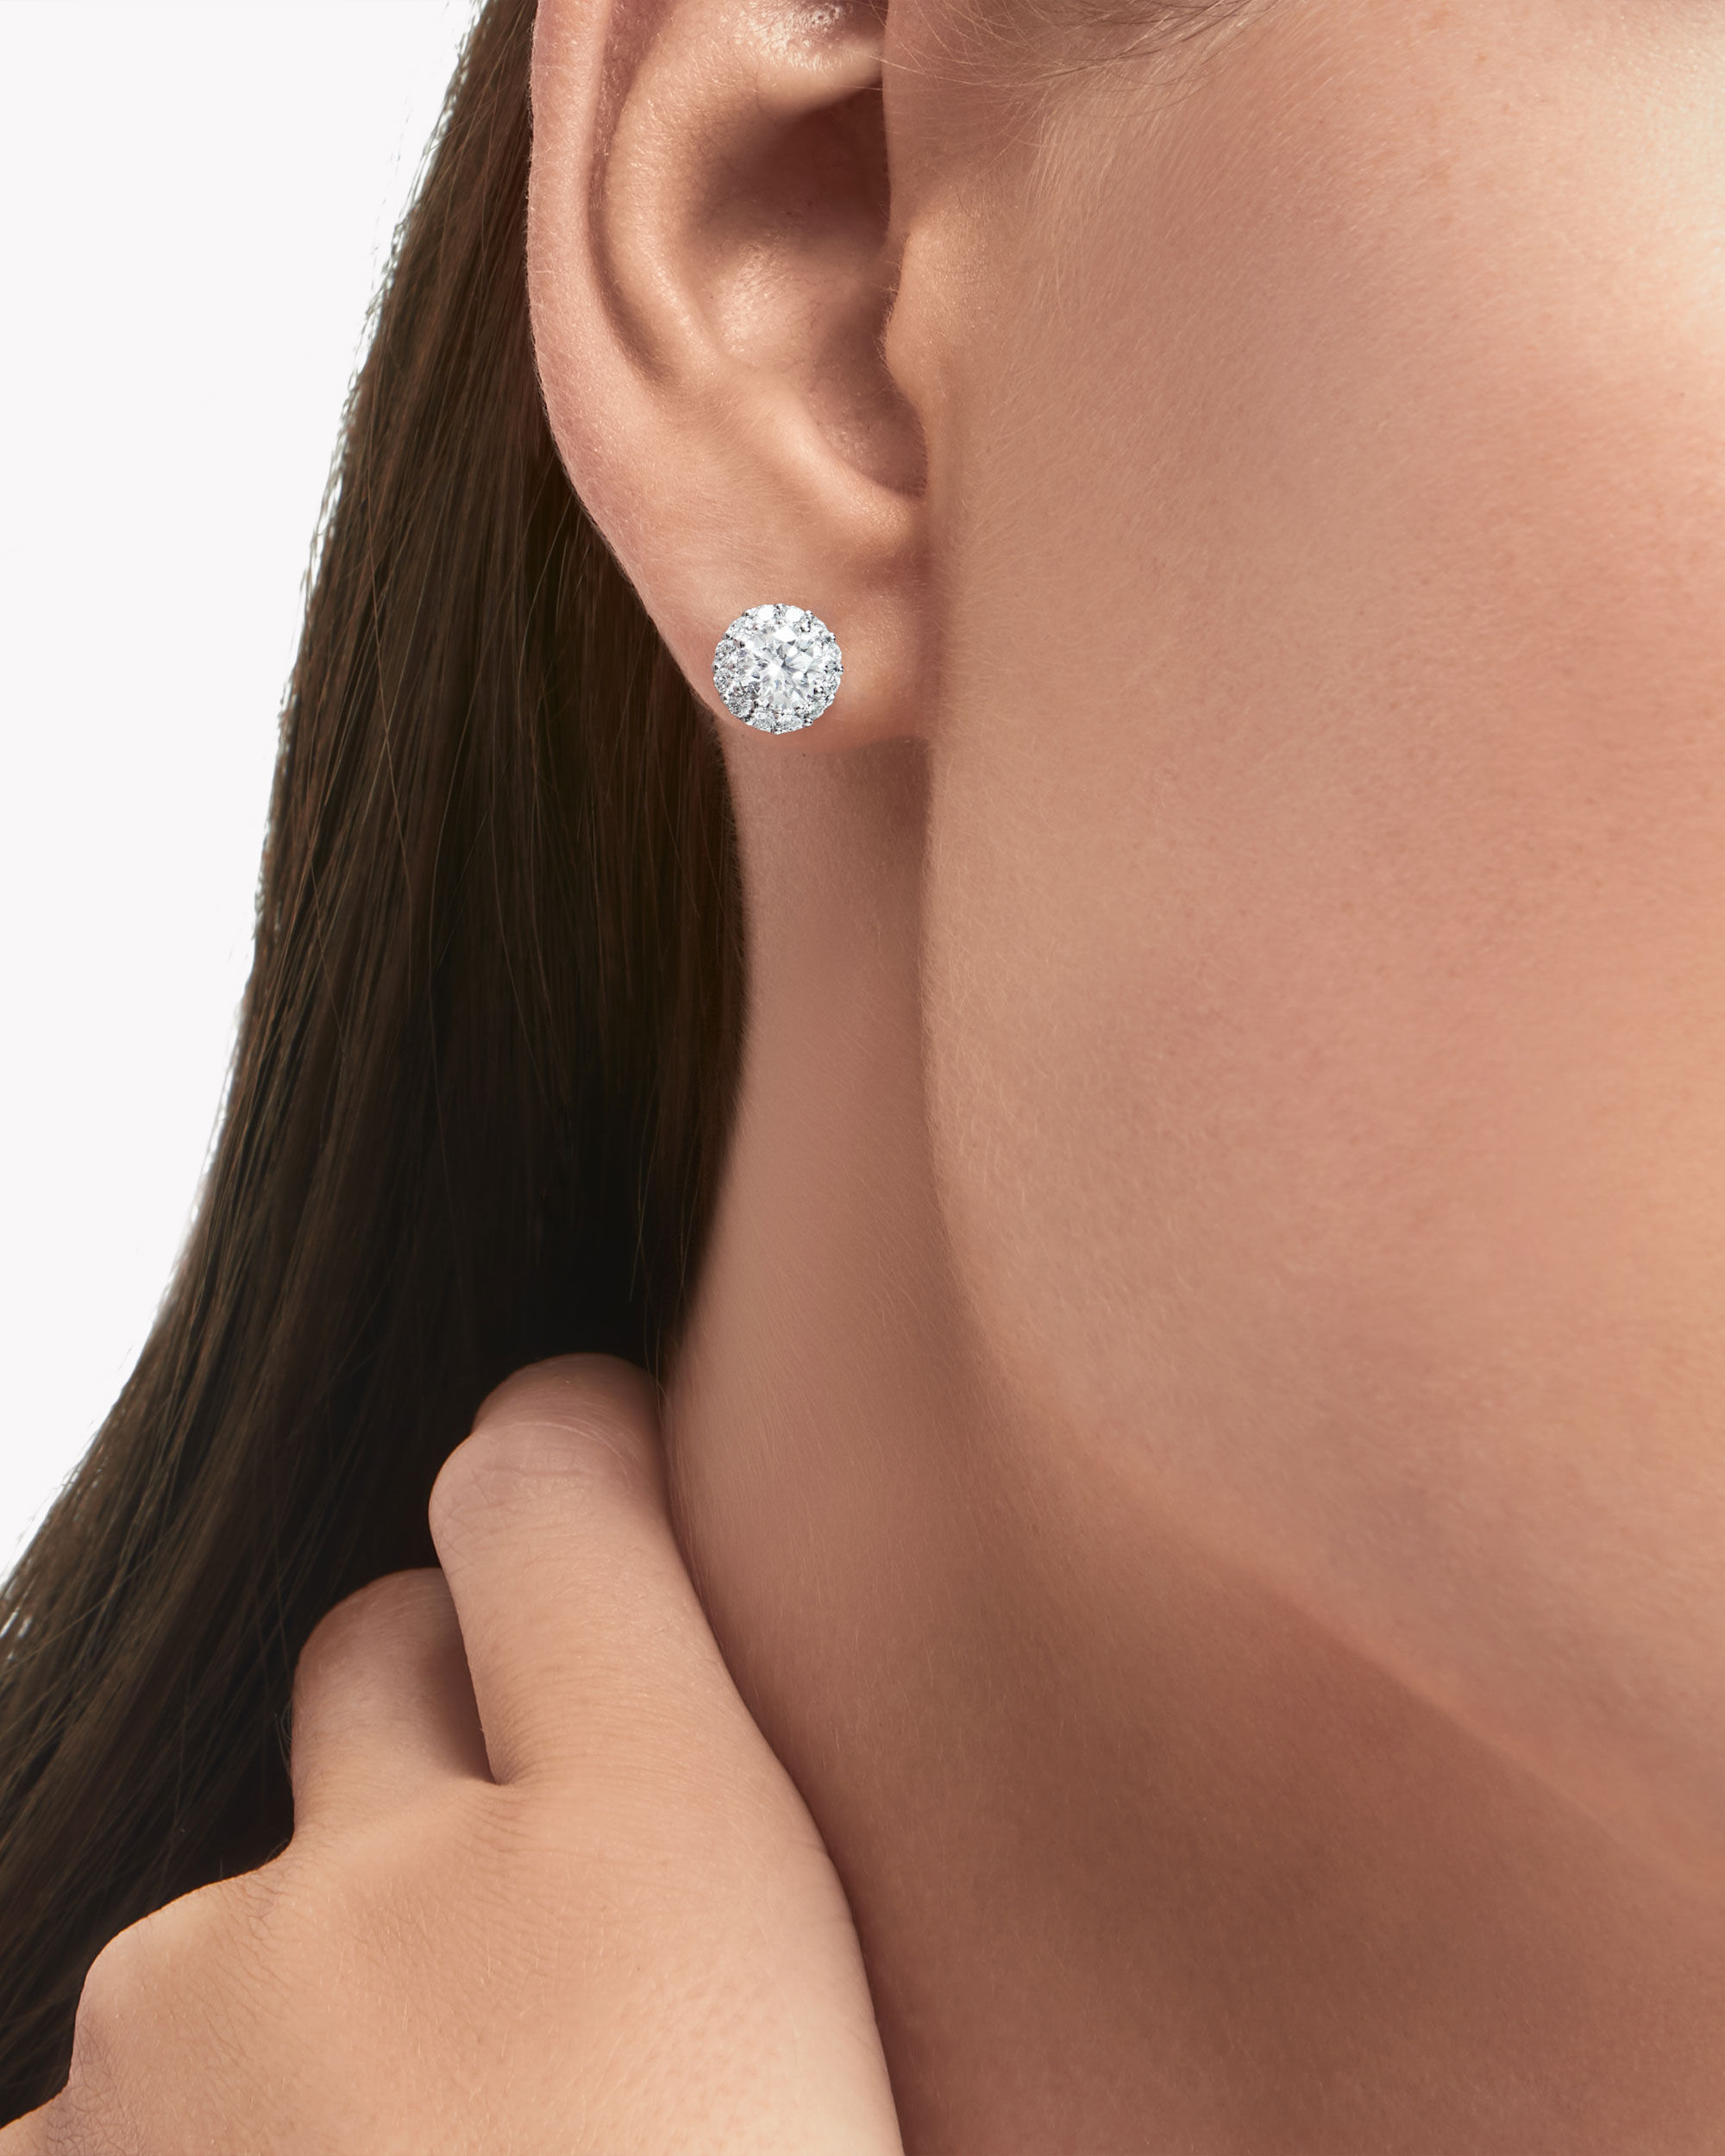 Model wears the Graff jewellery collection diamond earrings